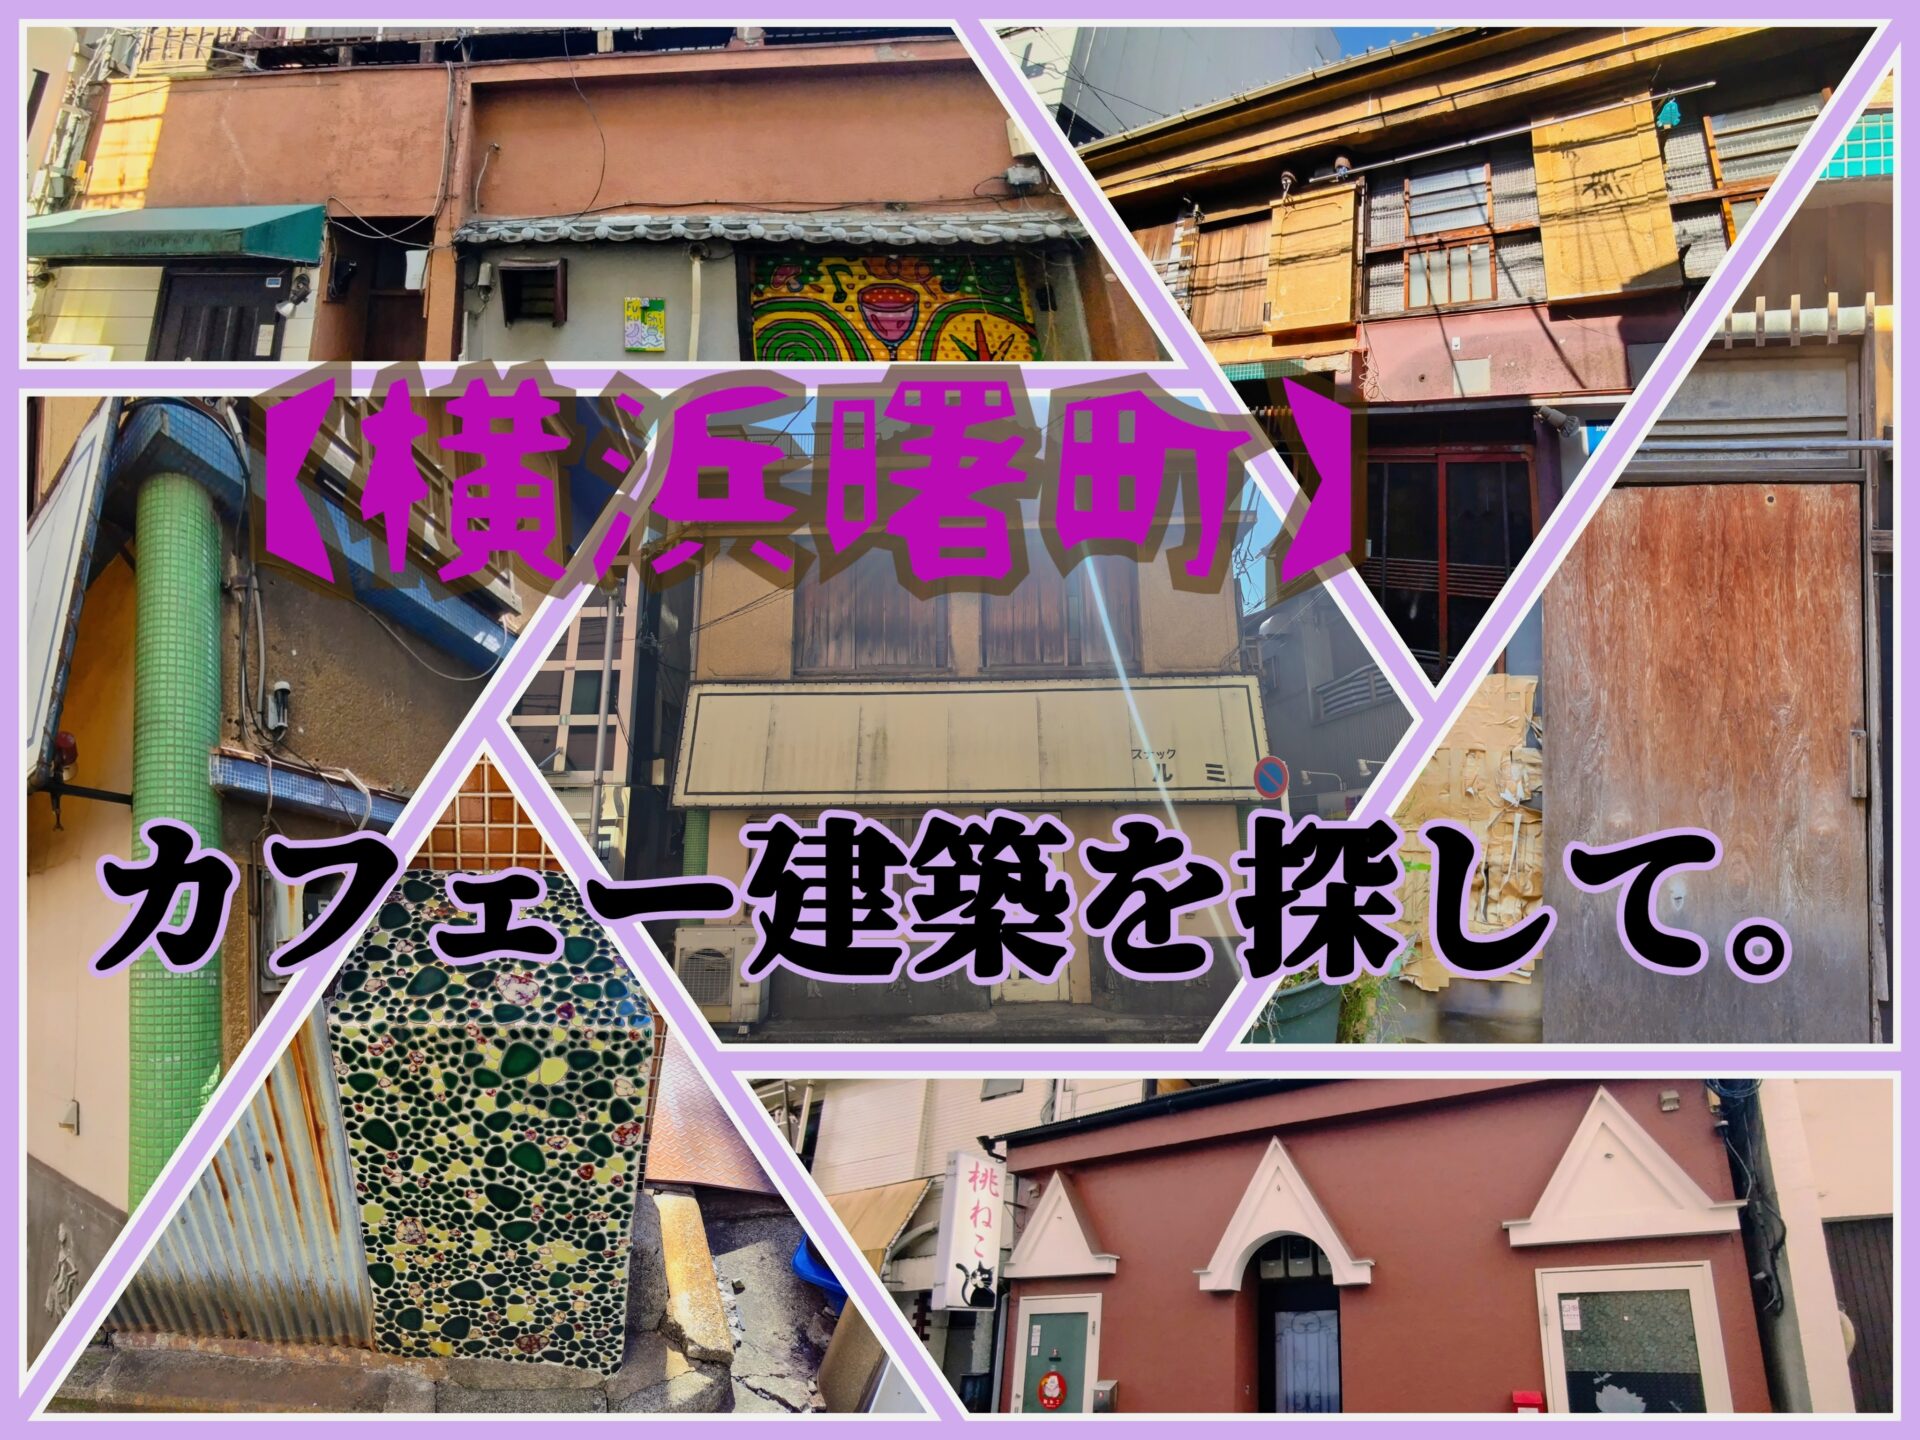 【赤線・青線】横浜曙町のカフェー建築を探して。【親不孝通り】